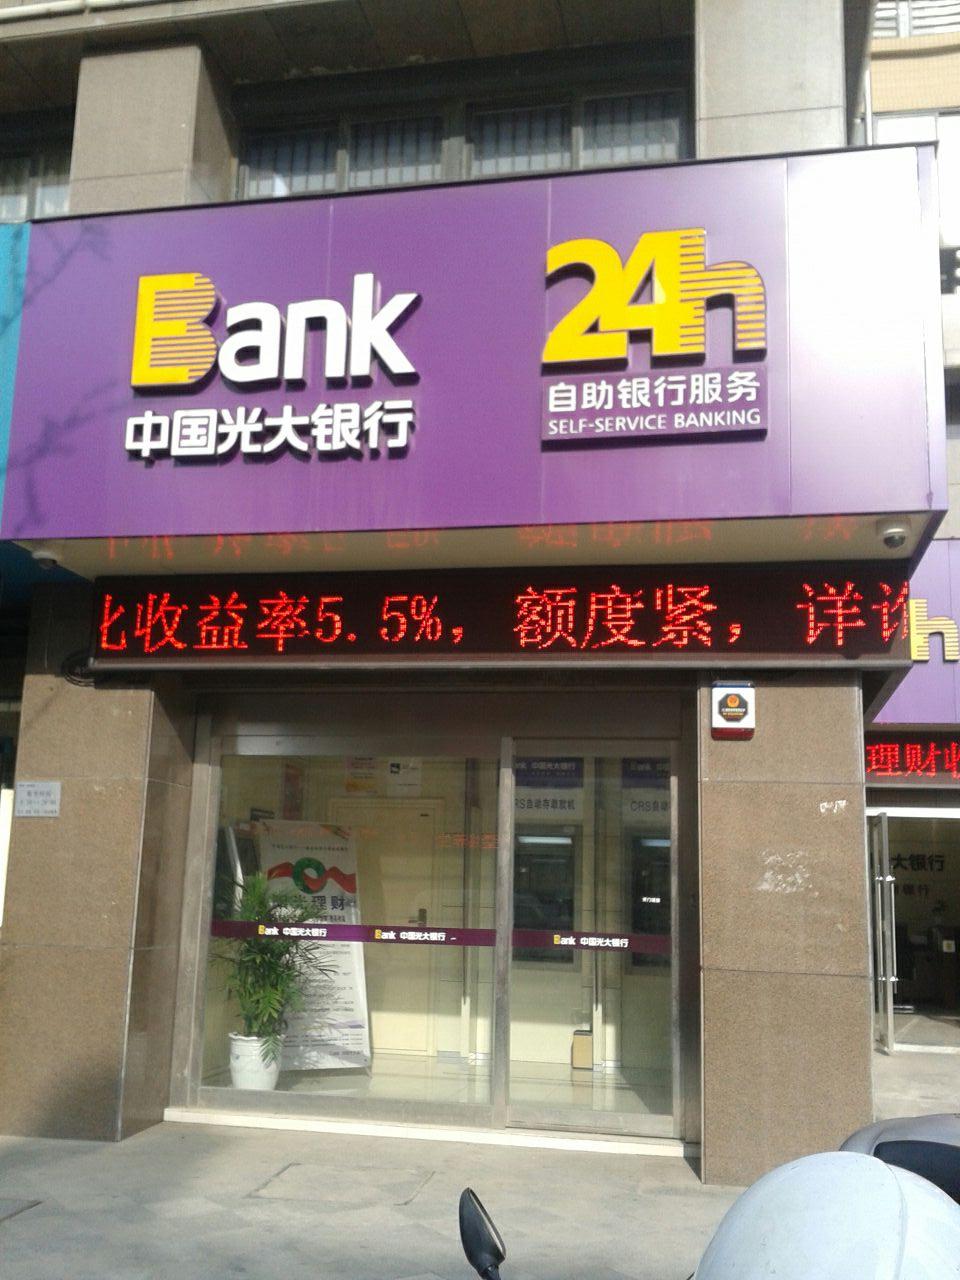 中国光大银行24小时自助银行(左岸社区支行)